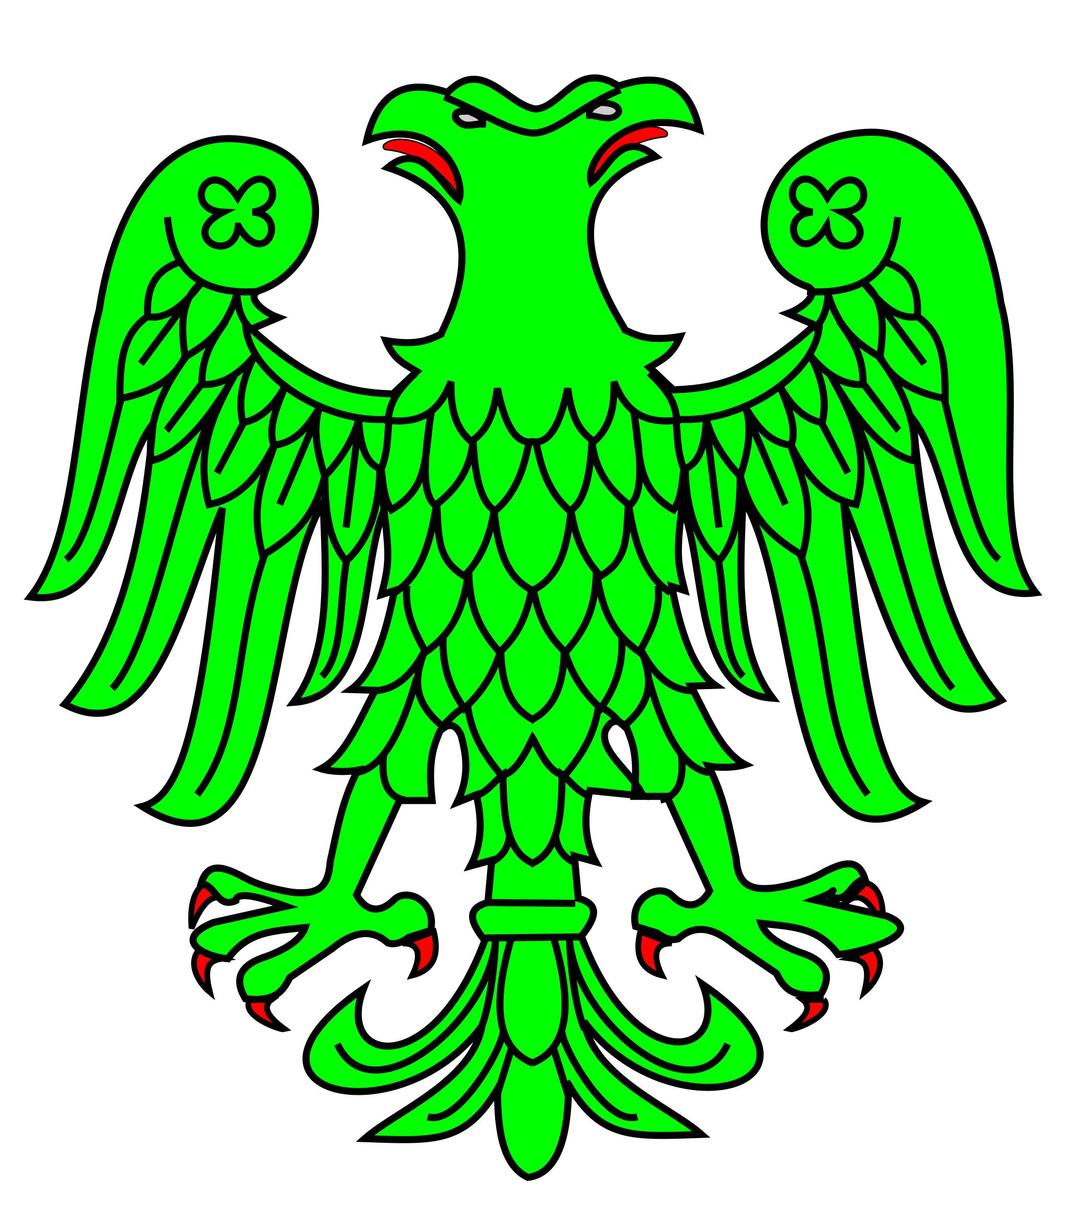 Aguila bicefala sinople, linguada y lampasada de gules png transparent